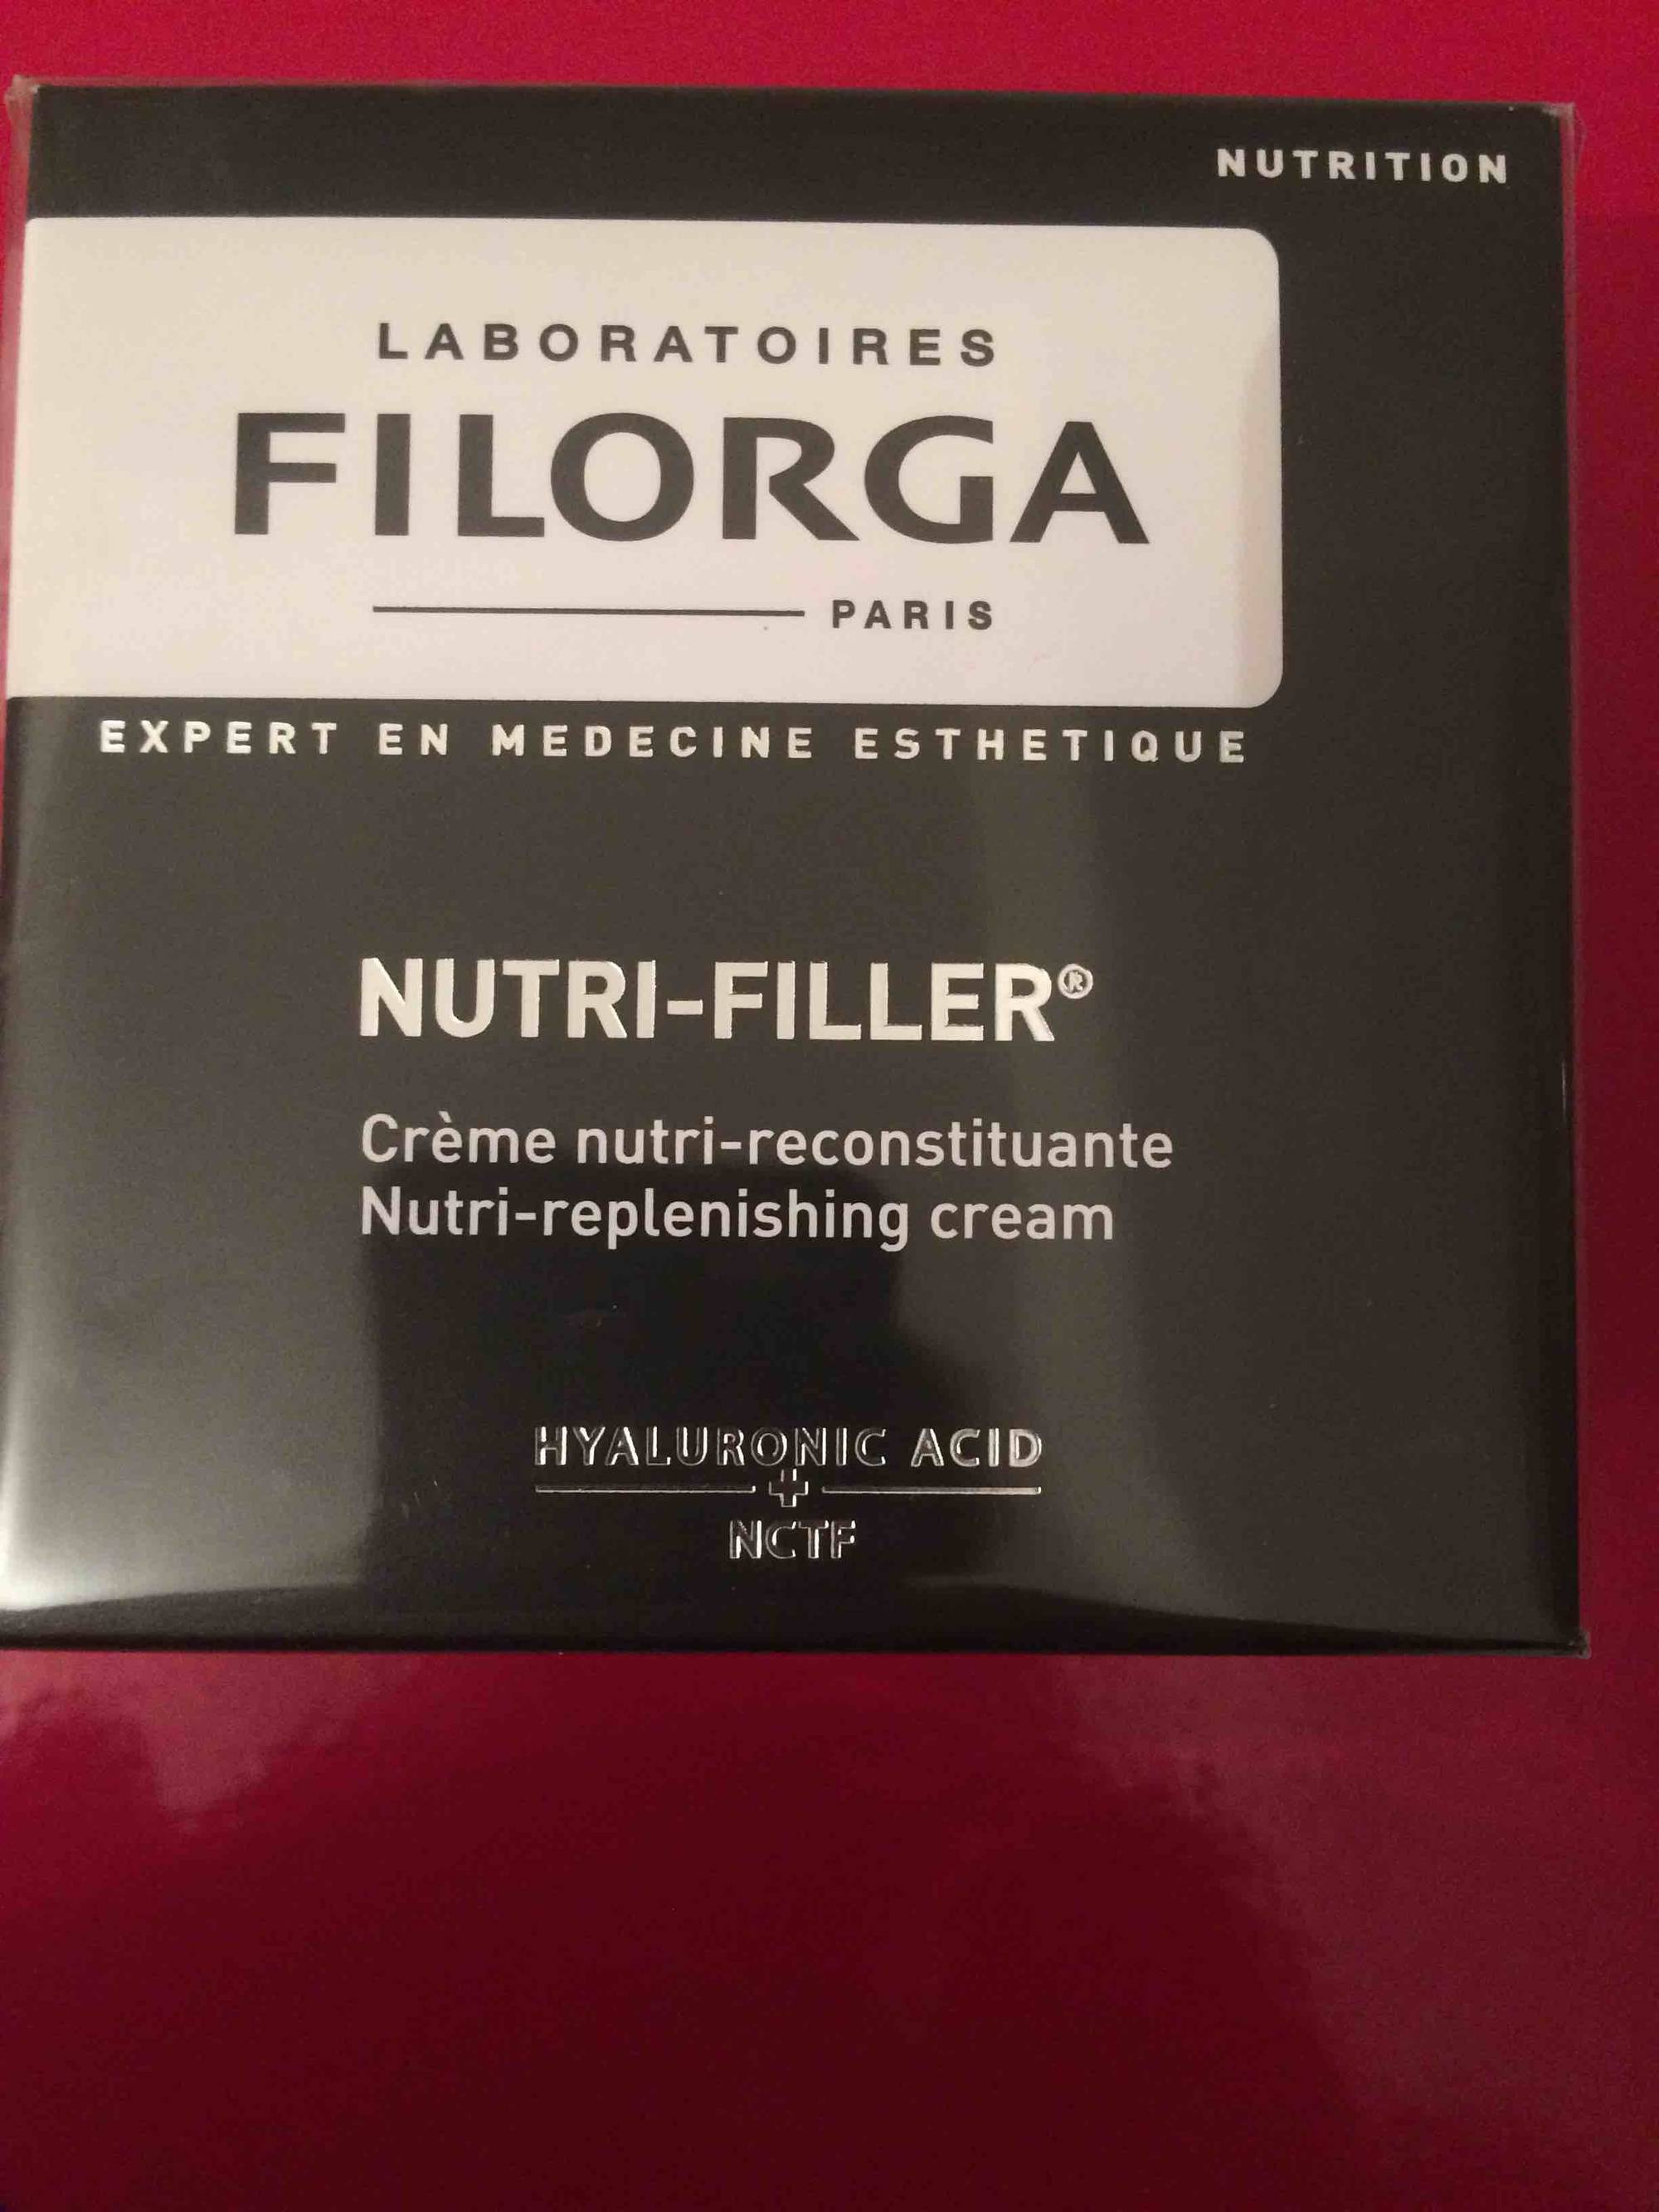 FILORGA PARIS - Nutri-filler - Crème nutri-reconstituante